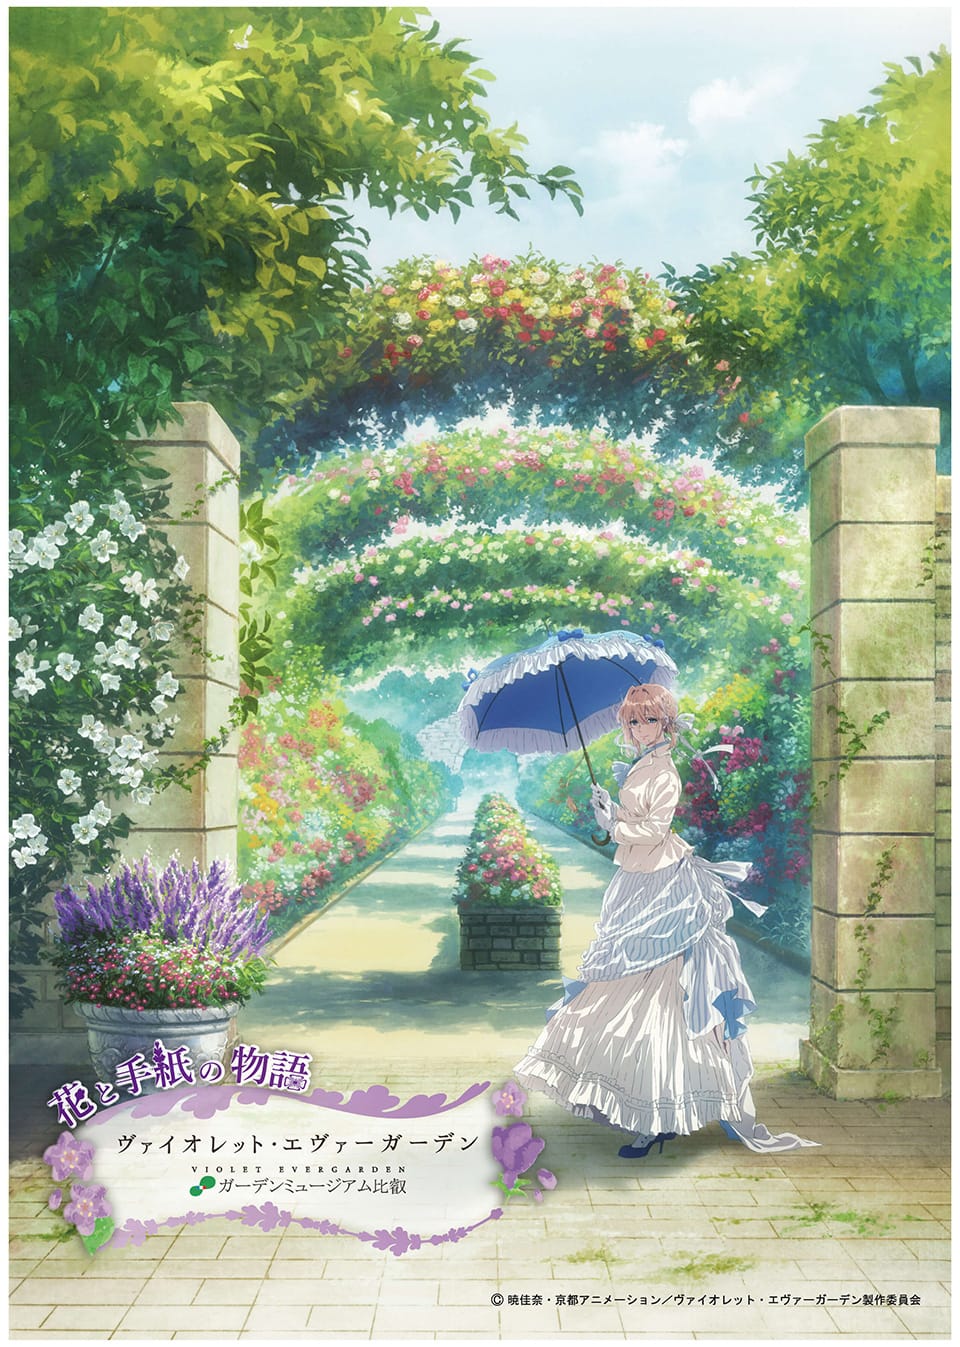 「ヴァイオレット・エヴァーガーデン」 5月3日より京都の庭園とコラボ!